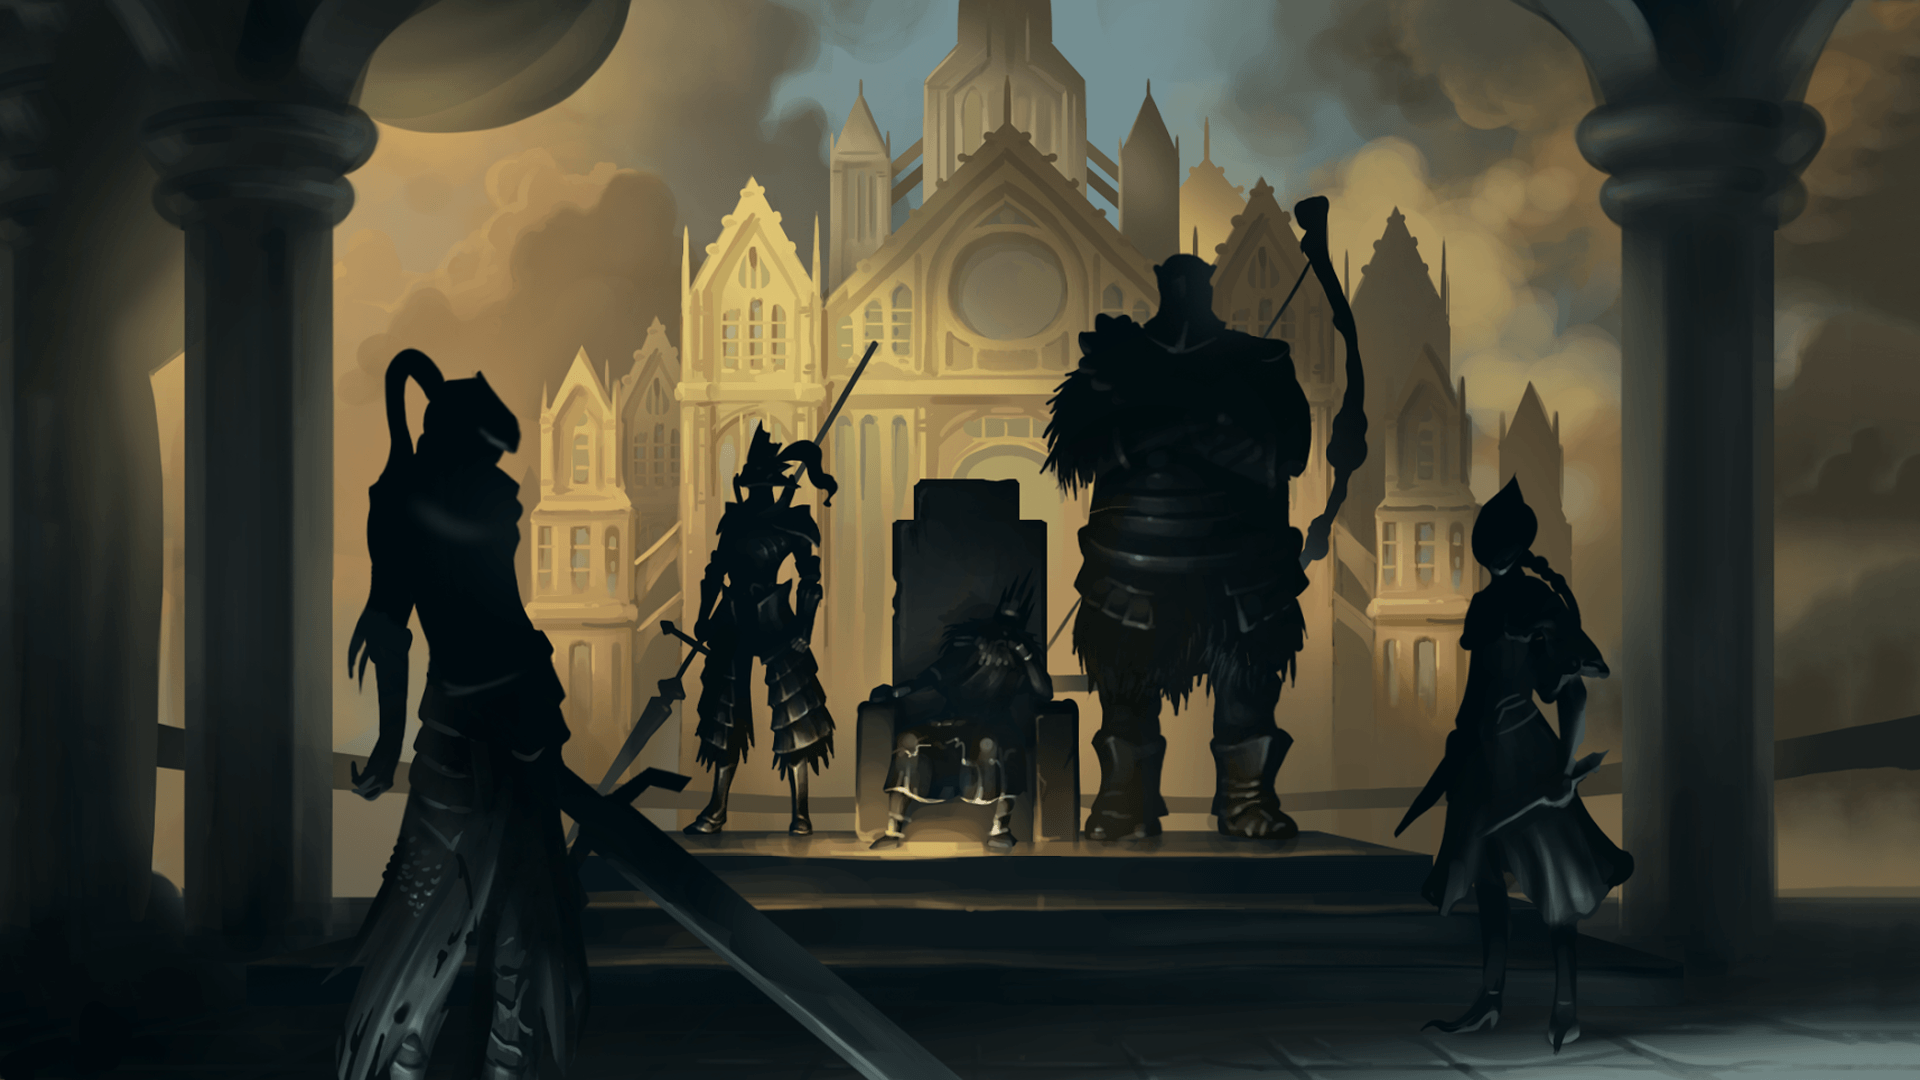 Dark Souls Ornstein Is Standing With Sword Wallpapers